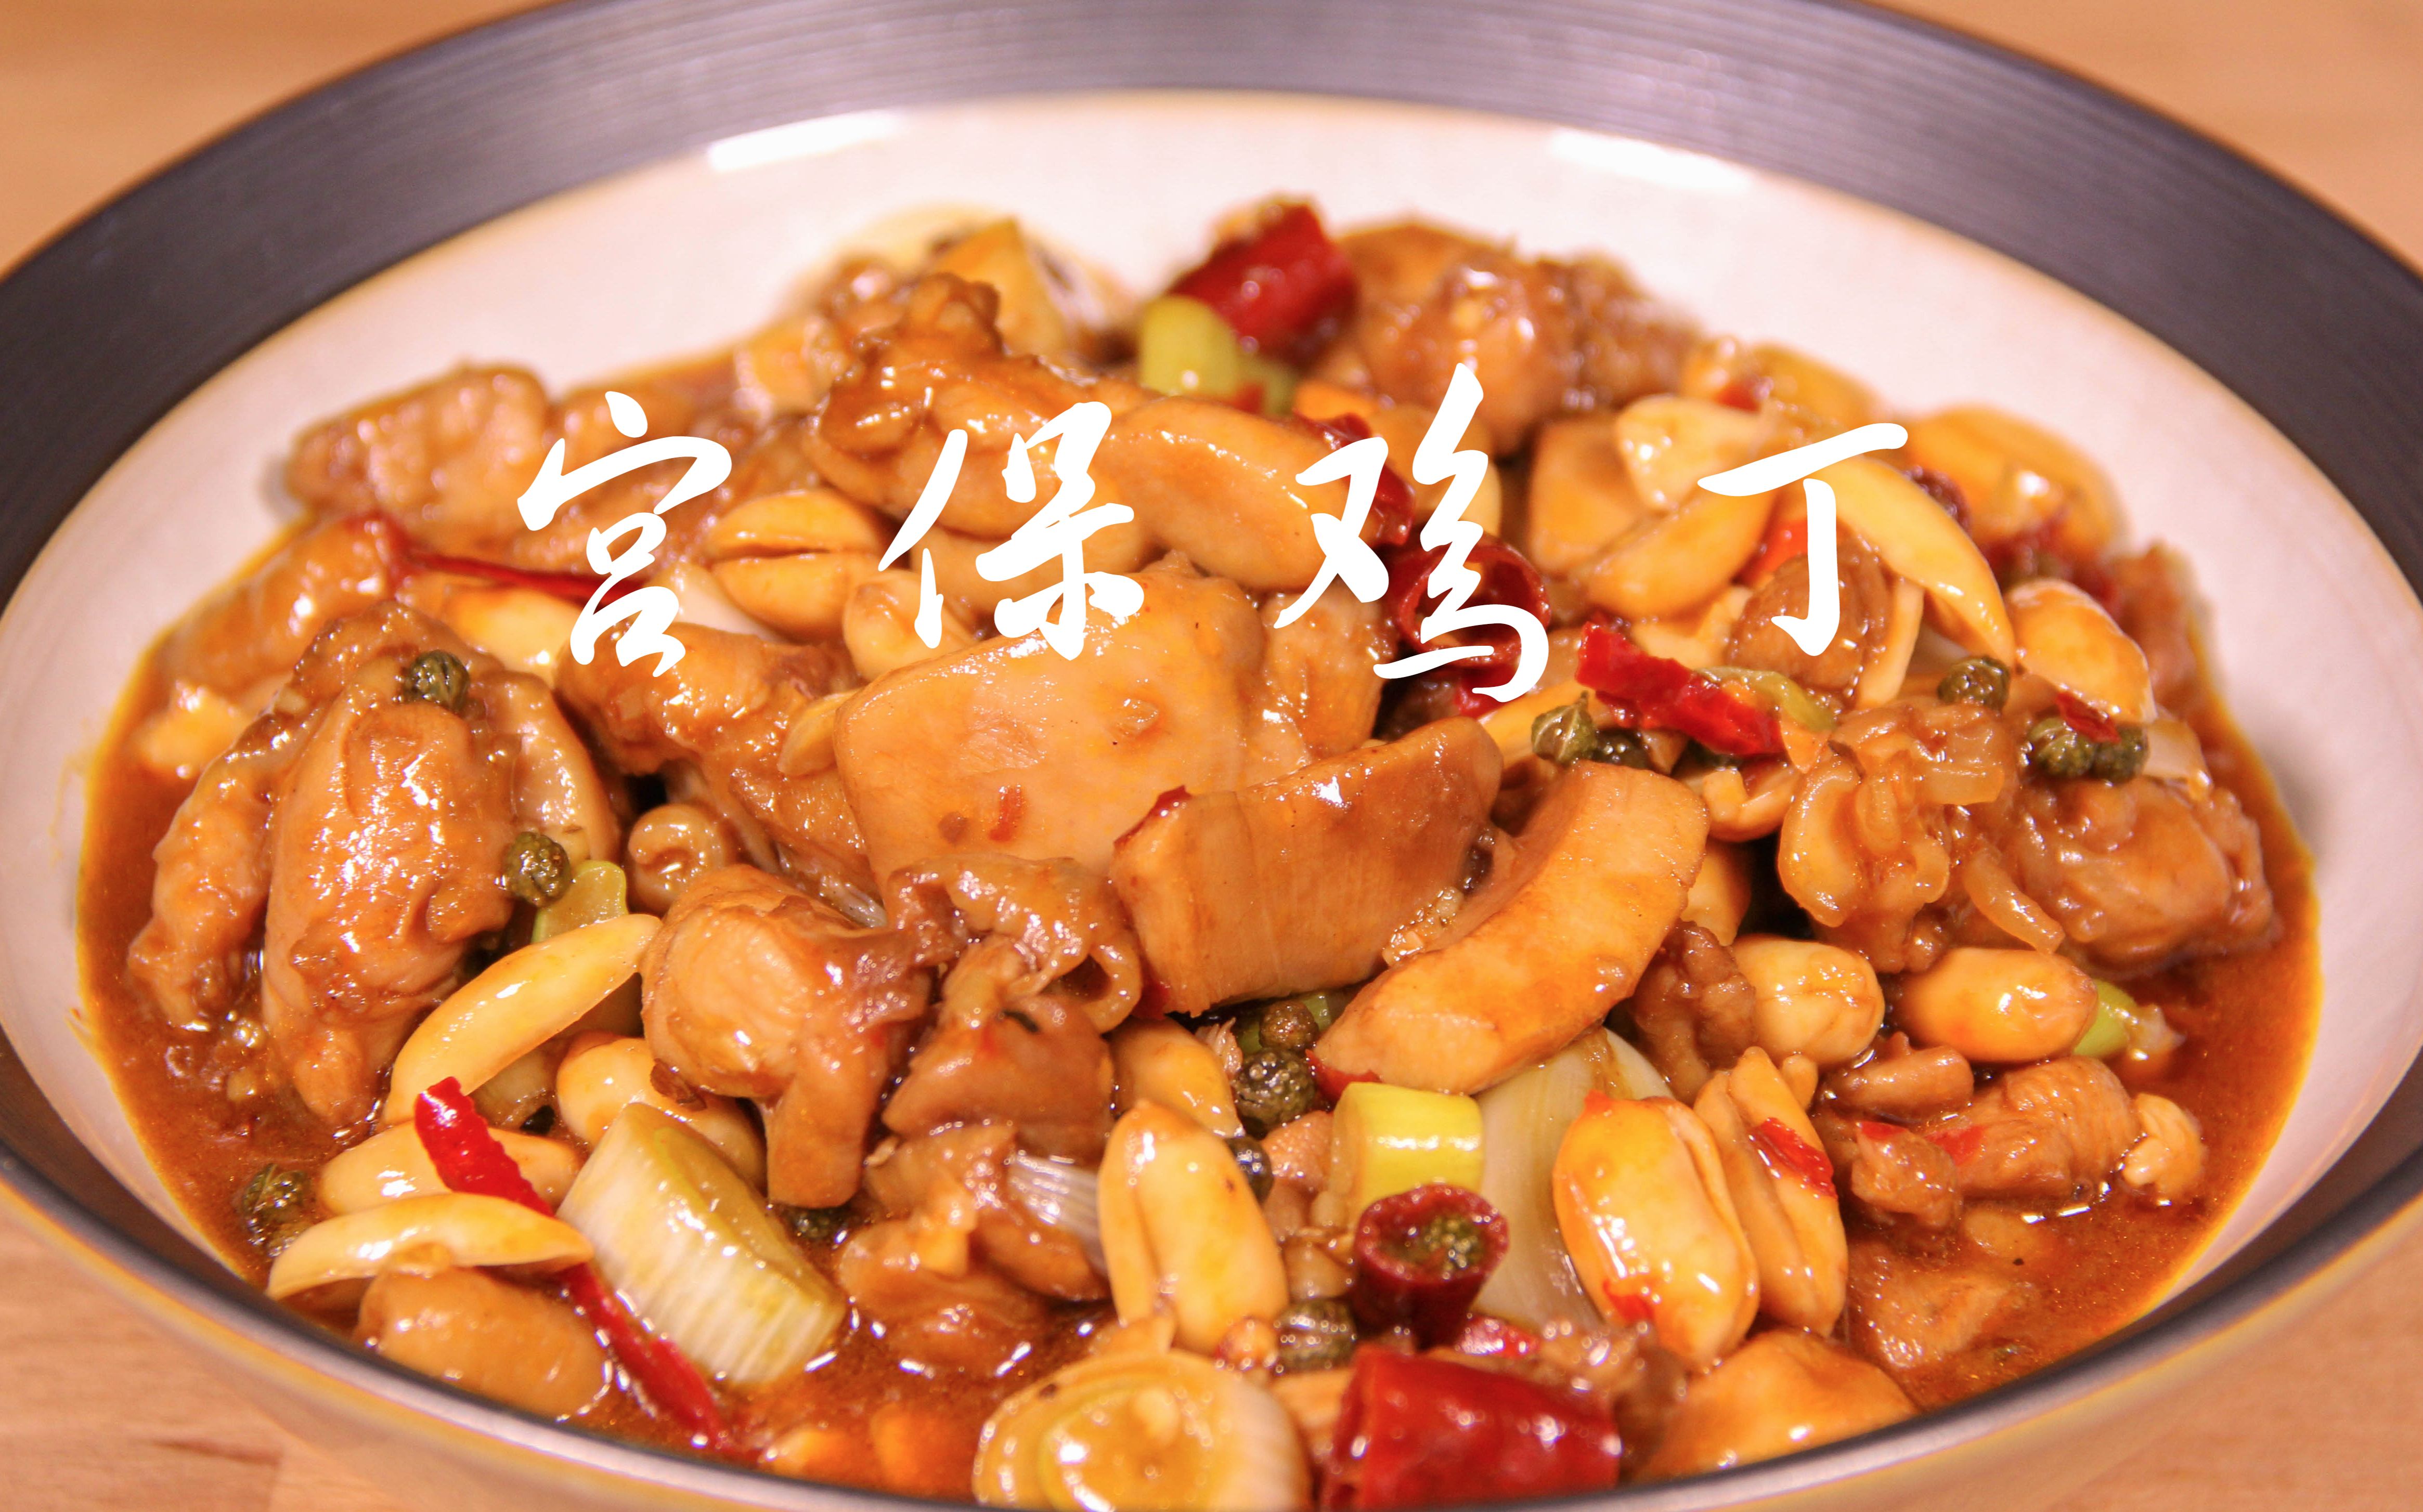 宫保鸡丁是川菜中的特色,在任四川总督时创制该菜,从此声名远播